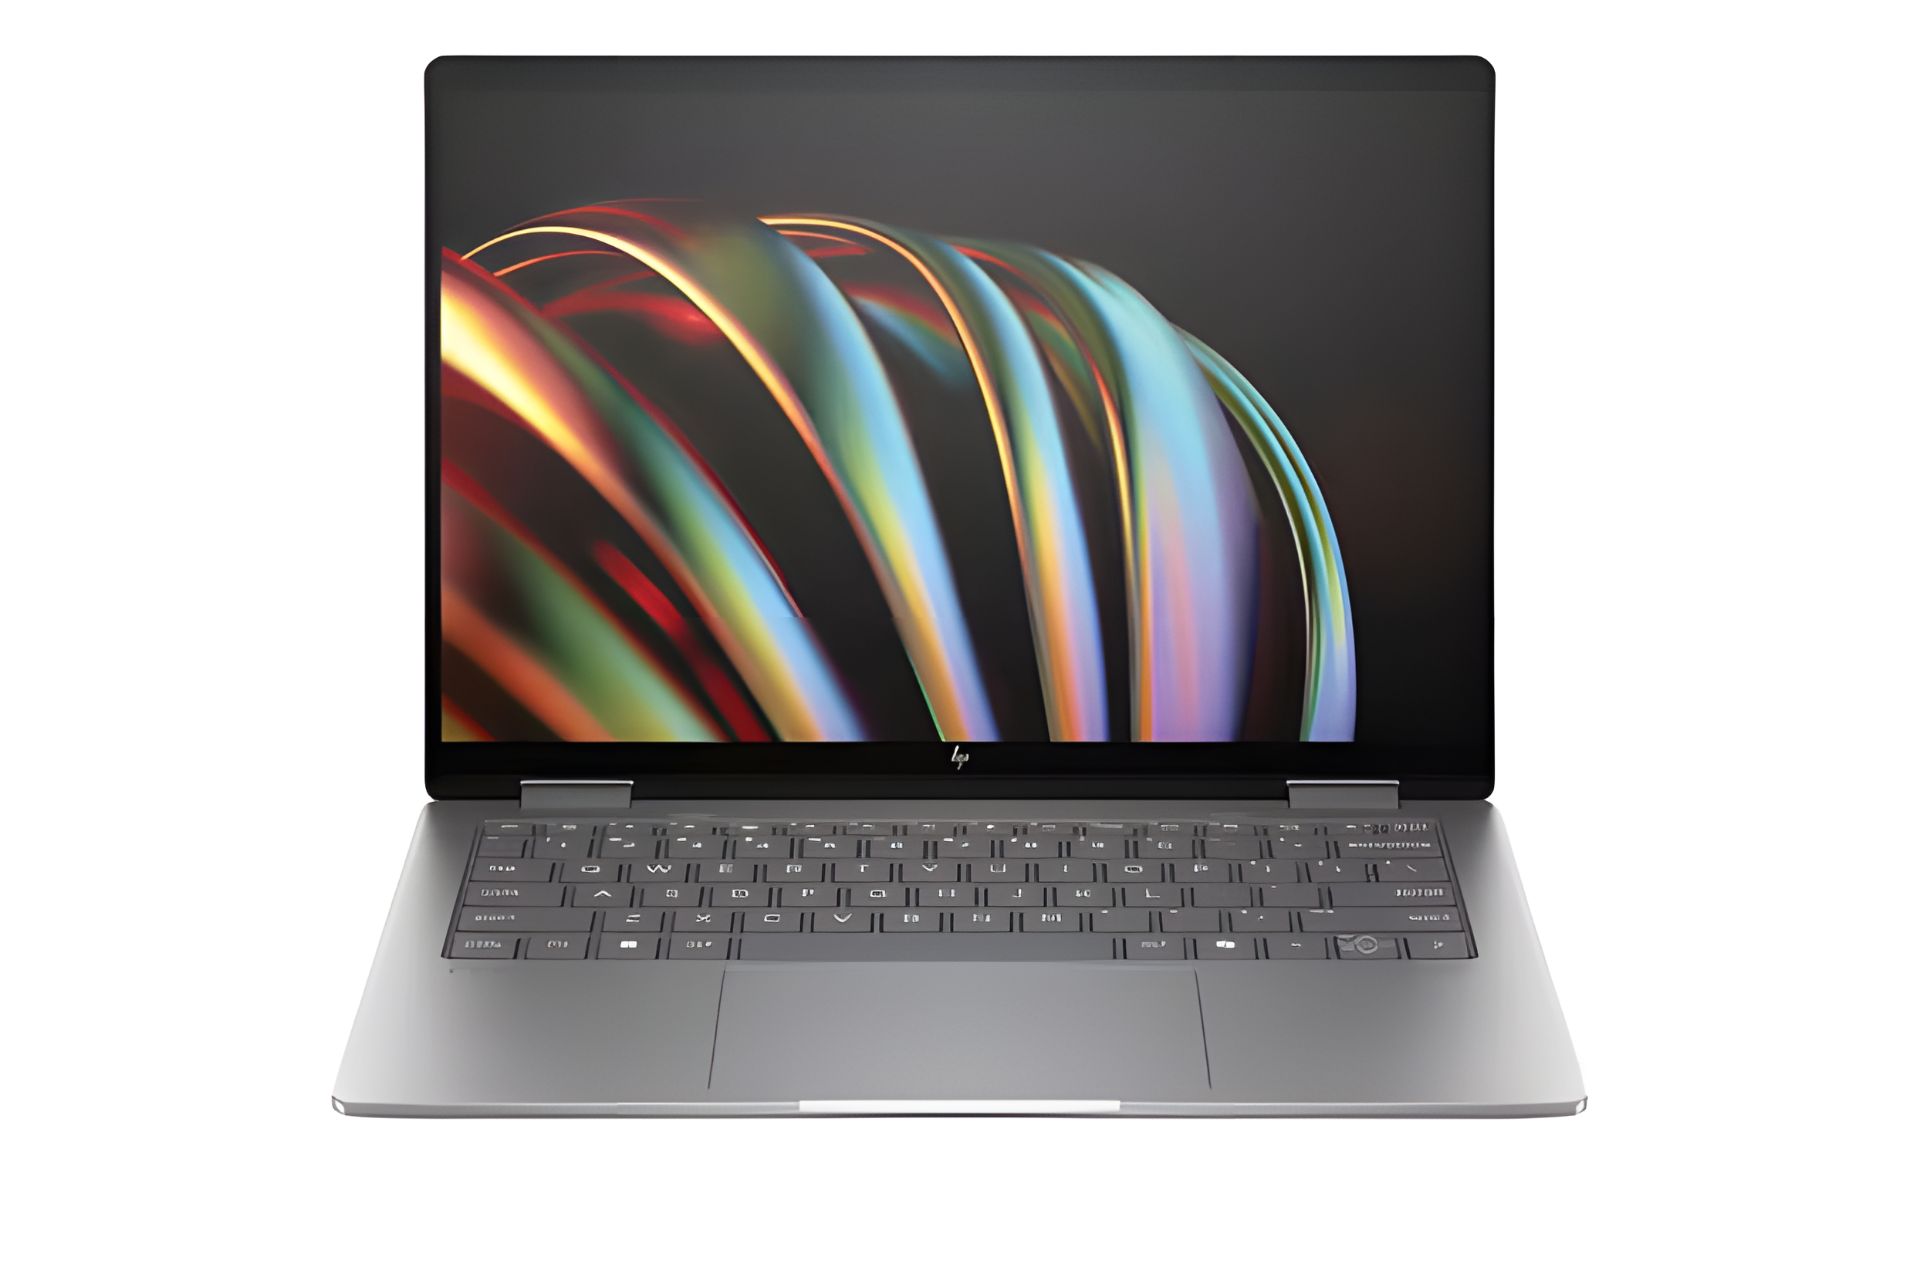 تصویر از جلو و نمایشگر رندر رسمی لپ تاپ ۱۴ اینچی HP Envy X360 مدل ۲۰۲۴